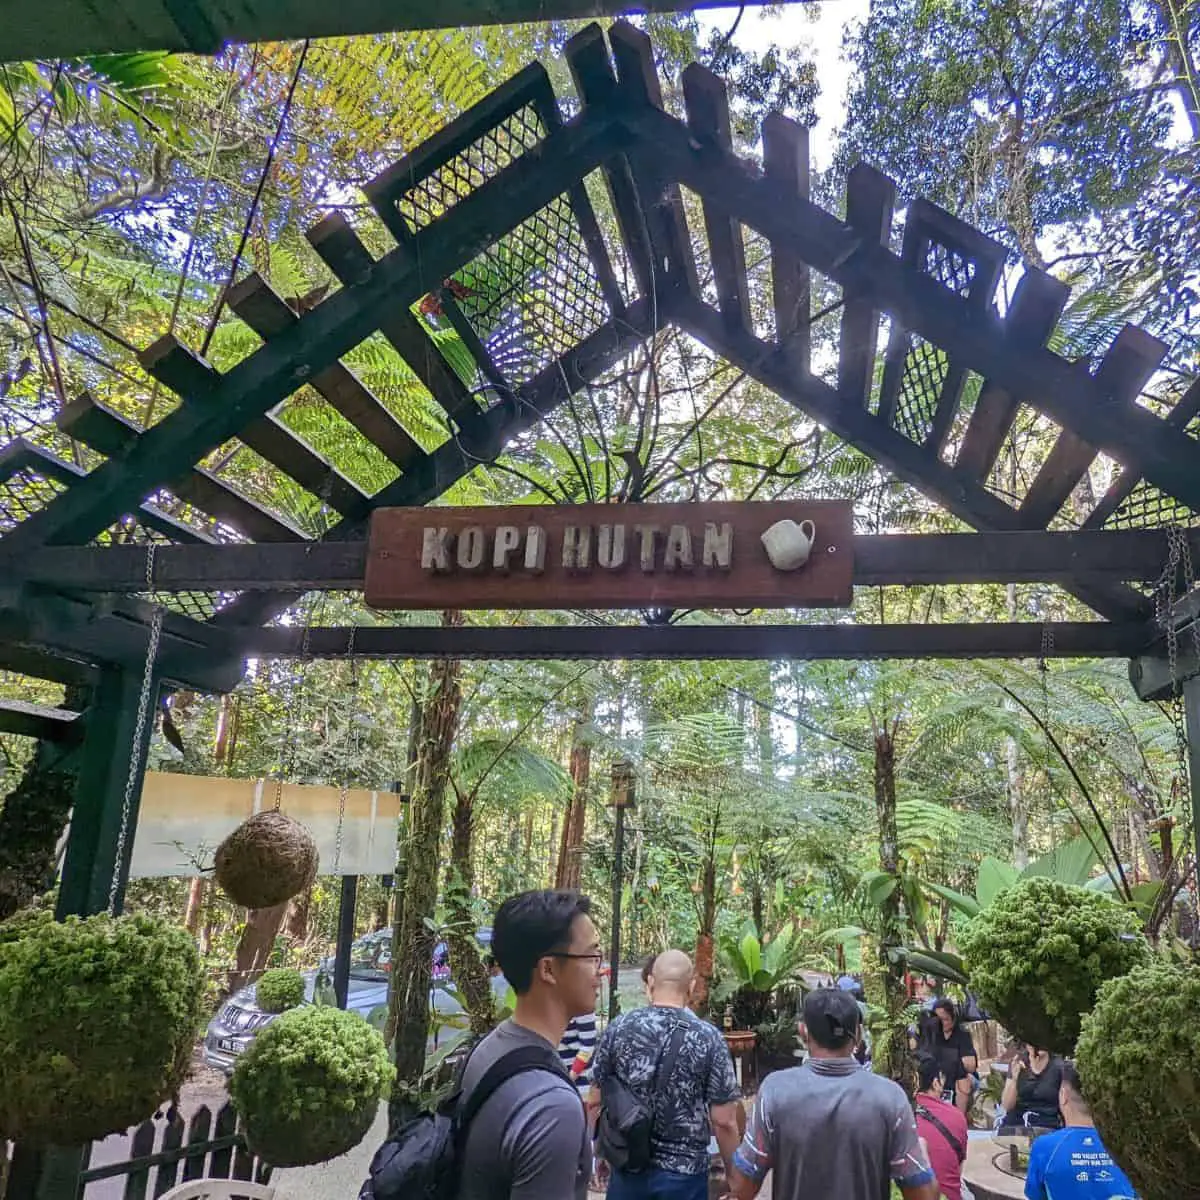 Kopi Hutan on Penang Hill entrance